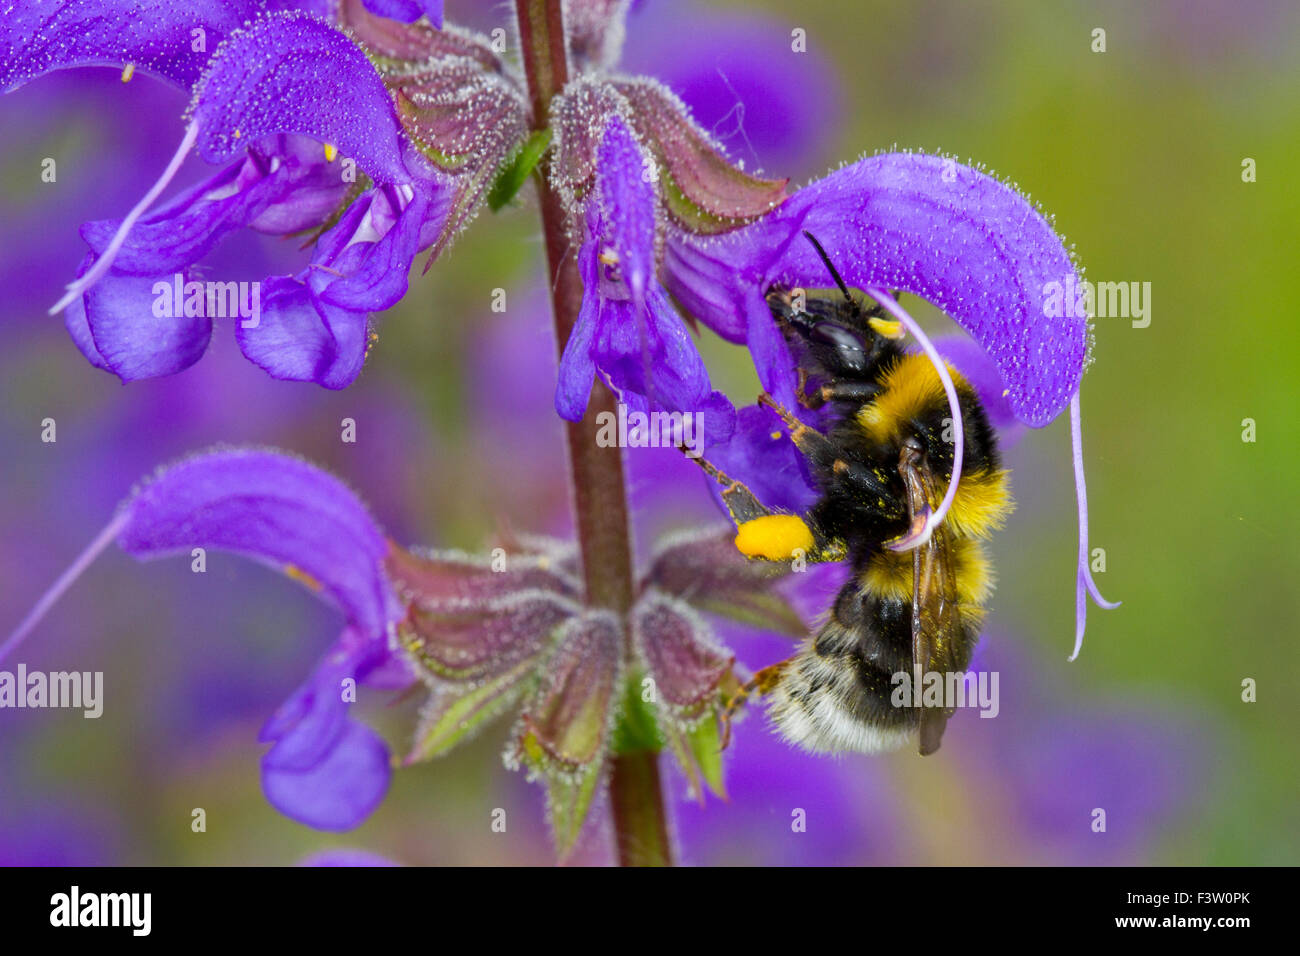 Les bourdons (Bombus hortorum jardin) travailleur adulte se nourrissant sur une prairie Clary (Salvia pratensis) fleur. La France. Banque D'Images